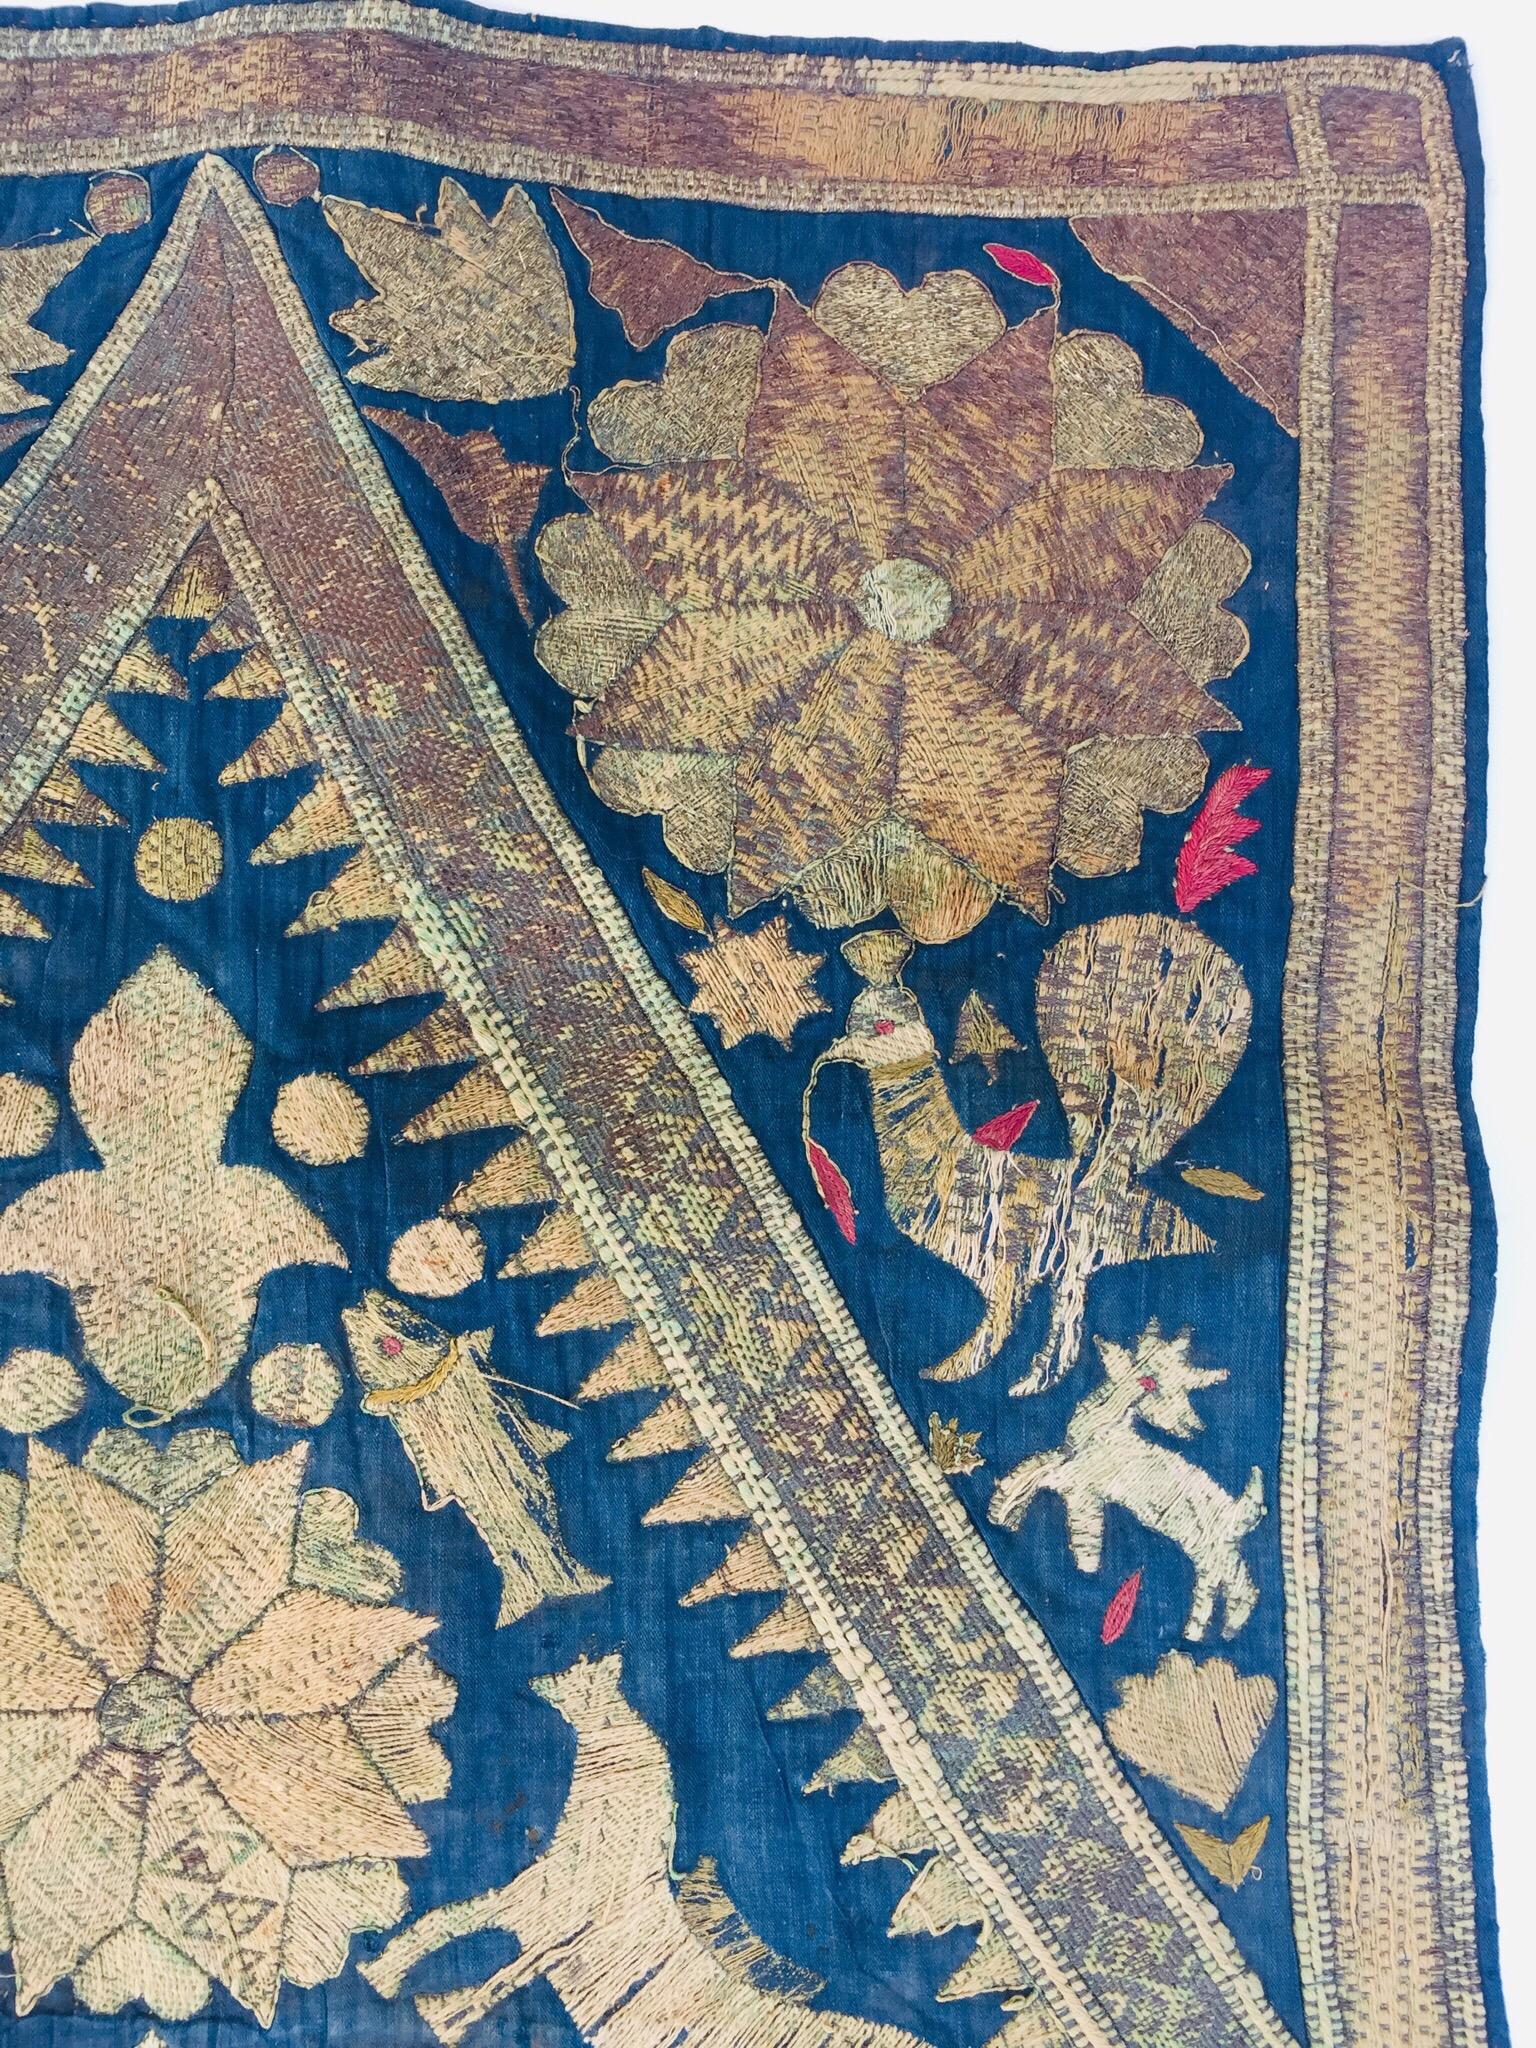 19th Century Moorish Islamic Ottoman Empire Textile Metallic Embroidered 6